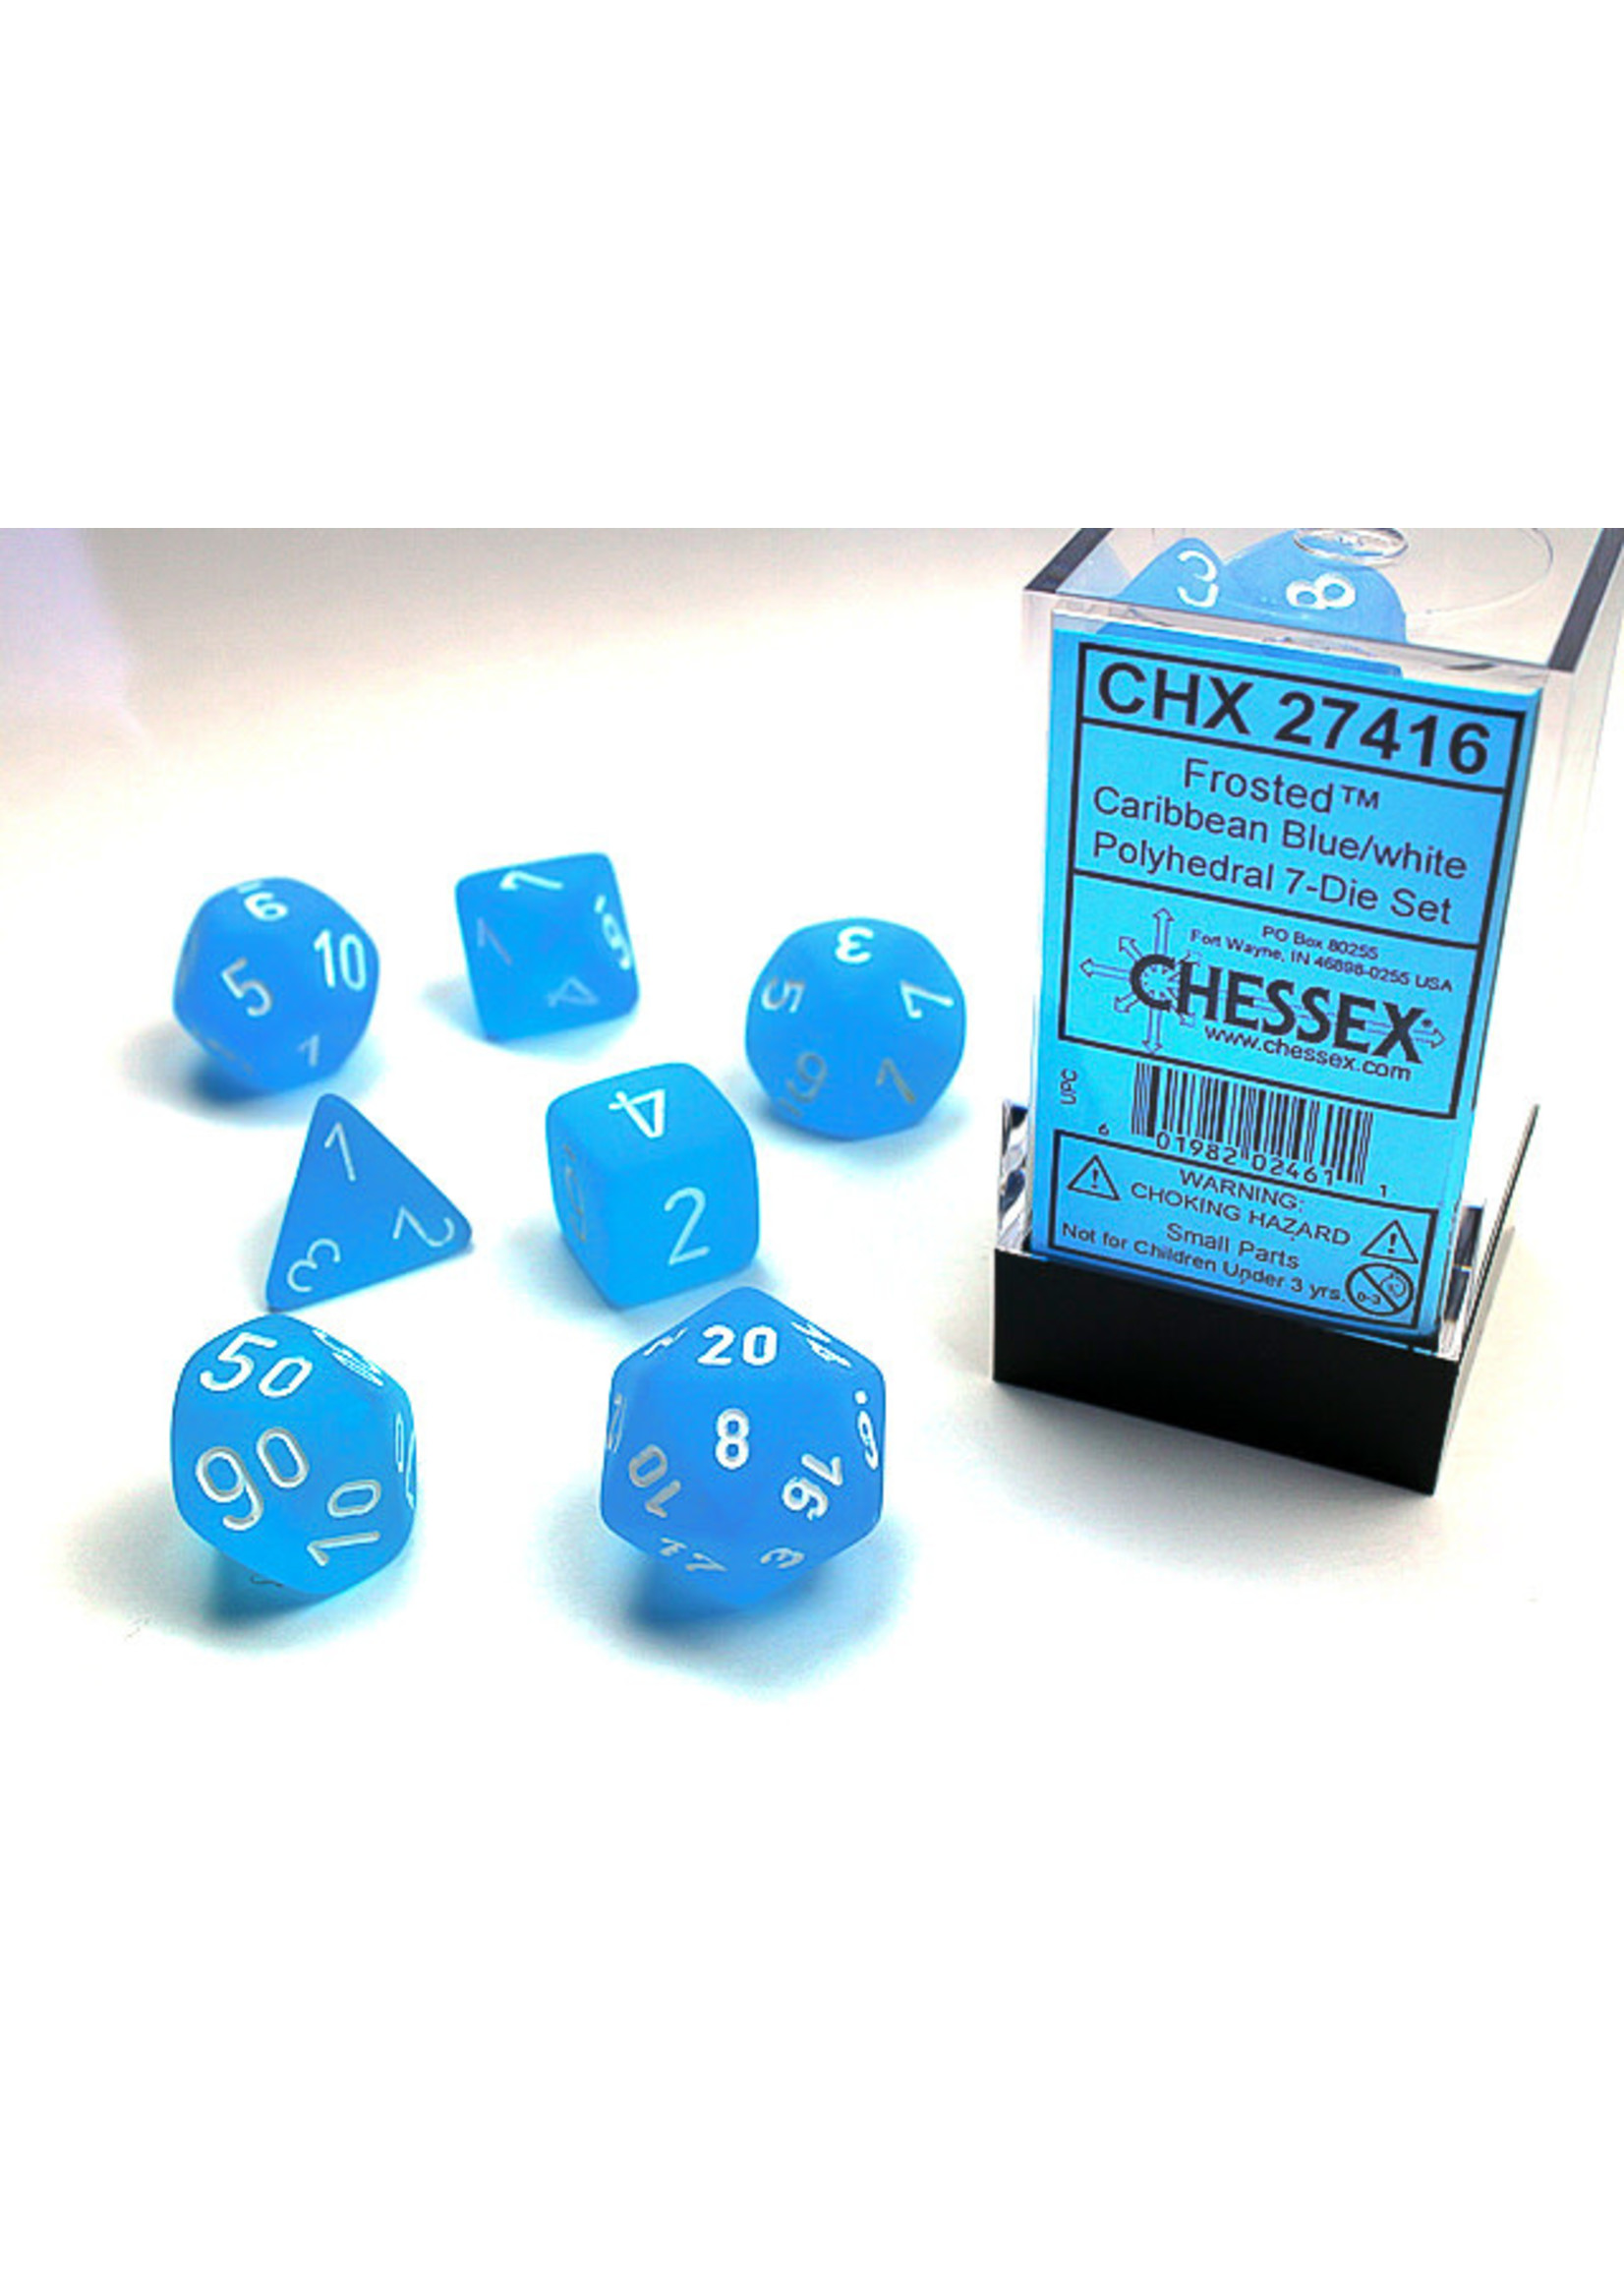 Chessex Frosted: Caribean Blue/White- Ensemble de 7 dés polyédriques de Chessex